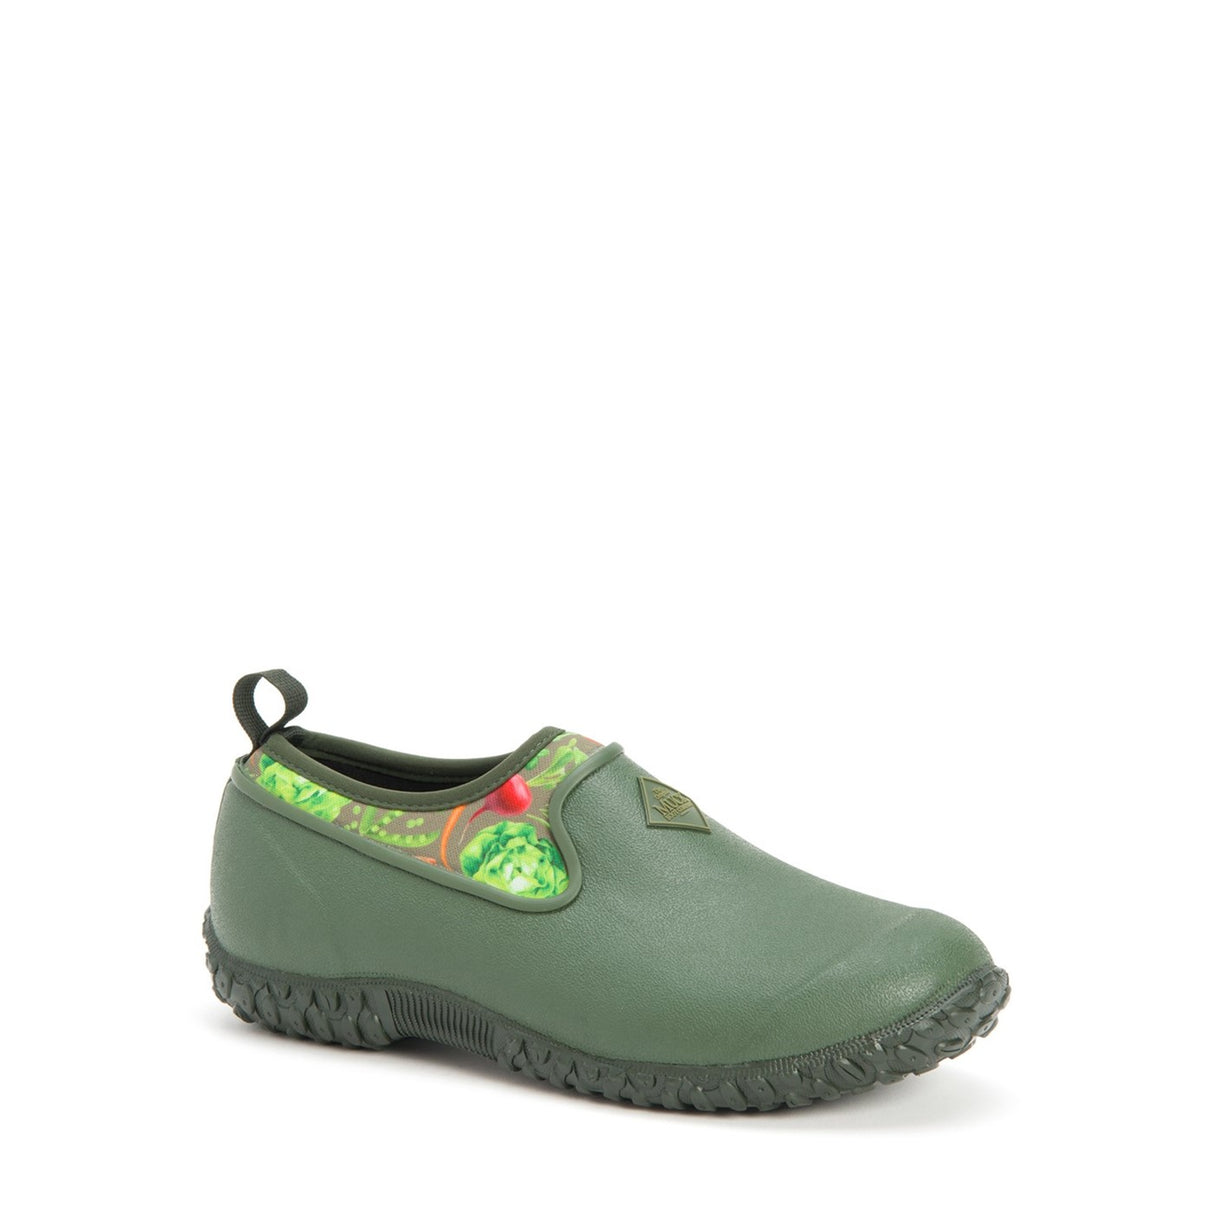 Women's RHS Muckster II Shoes Green Veggie Print